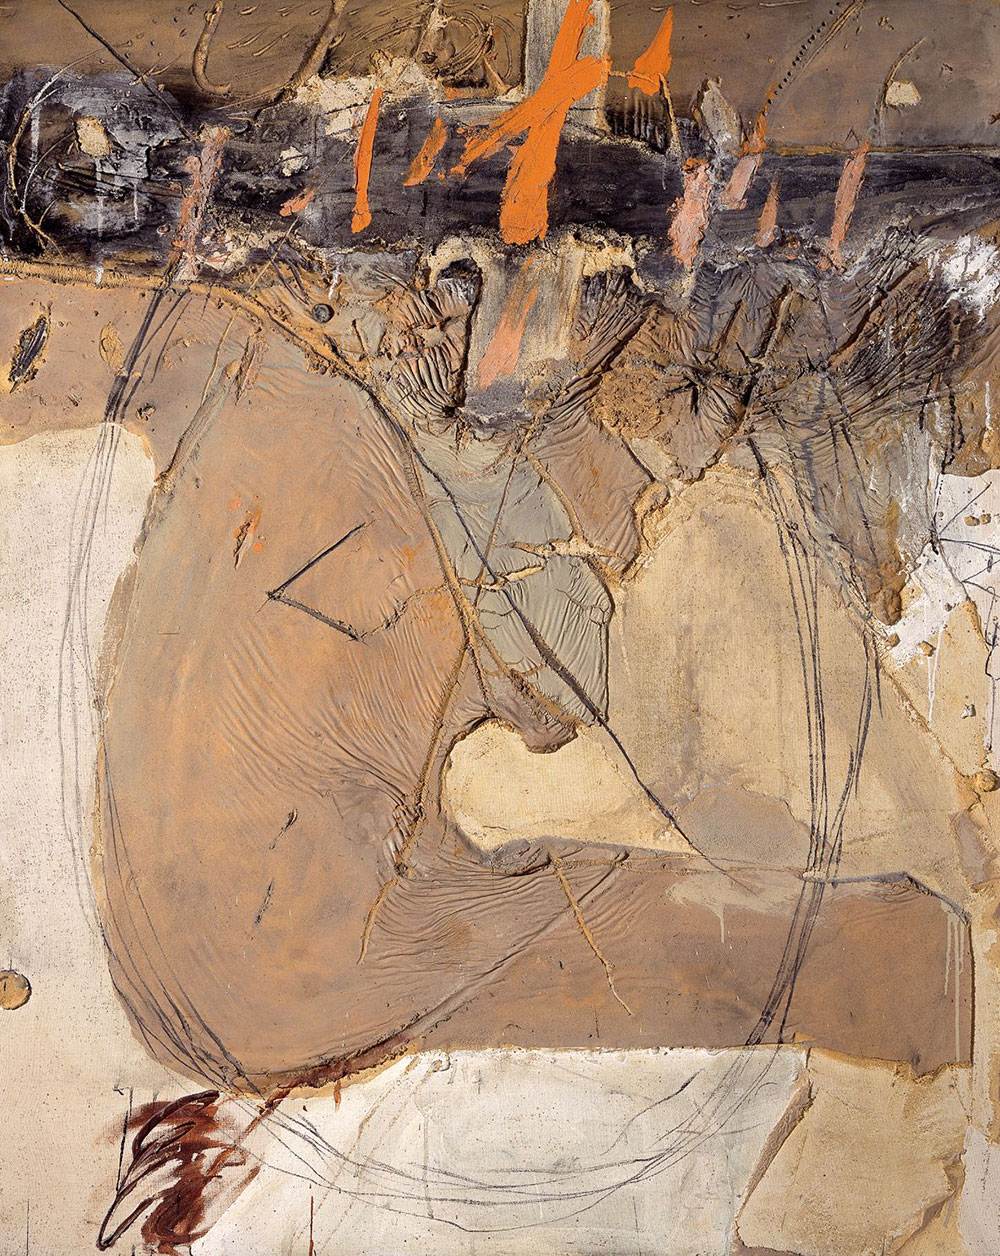 Antoni Tàpies at Museum of Contemporary Art Siegen